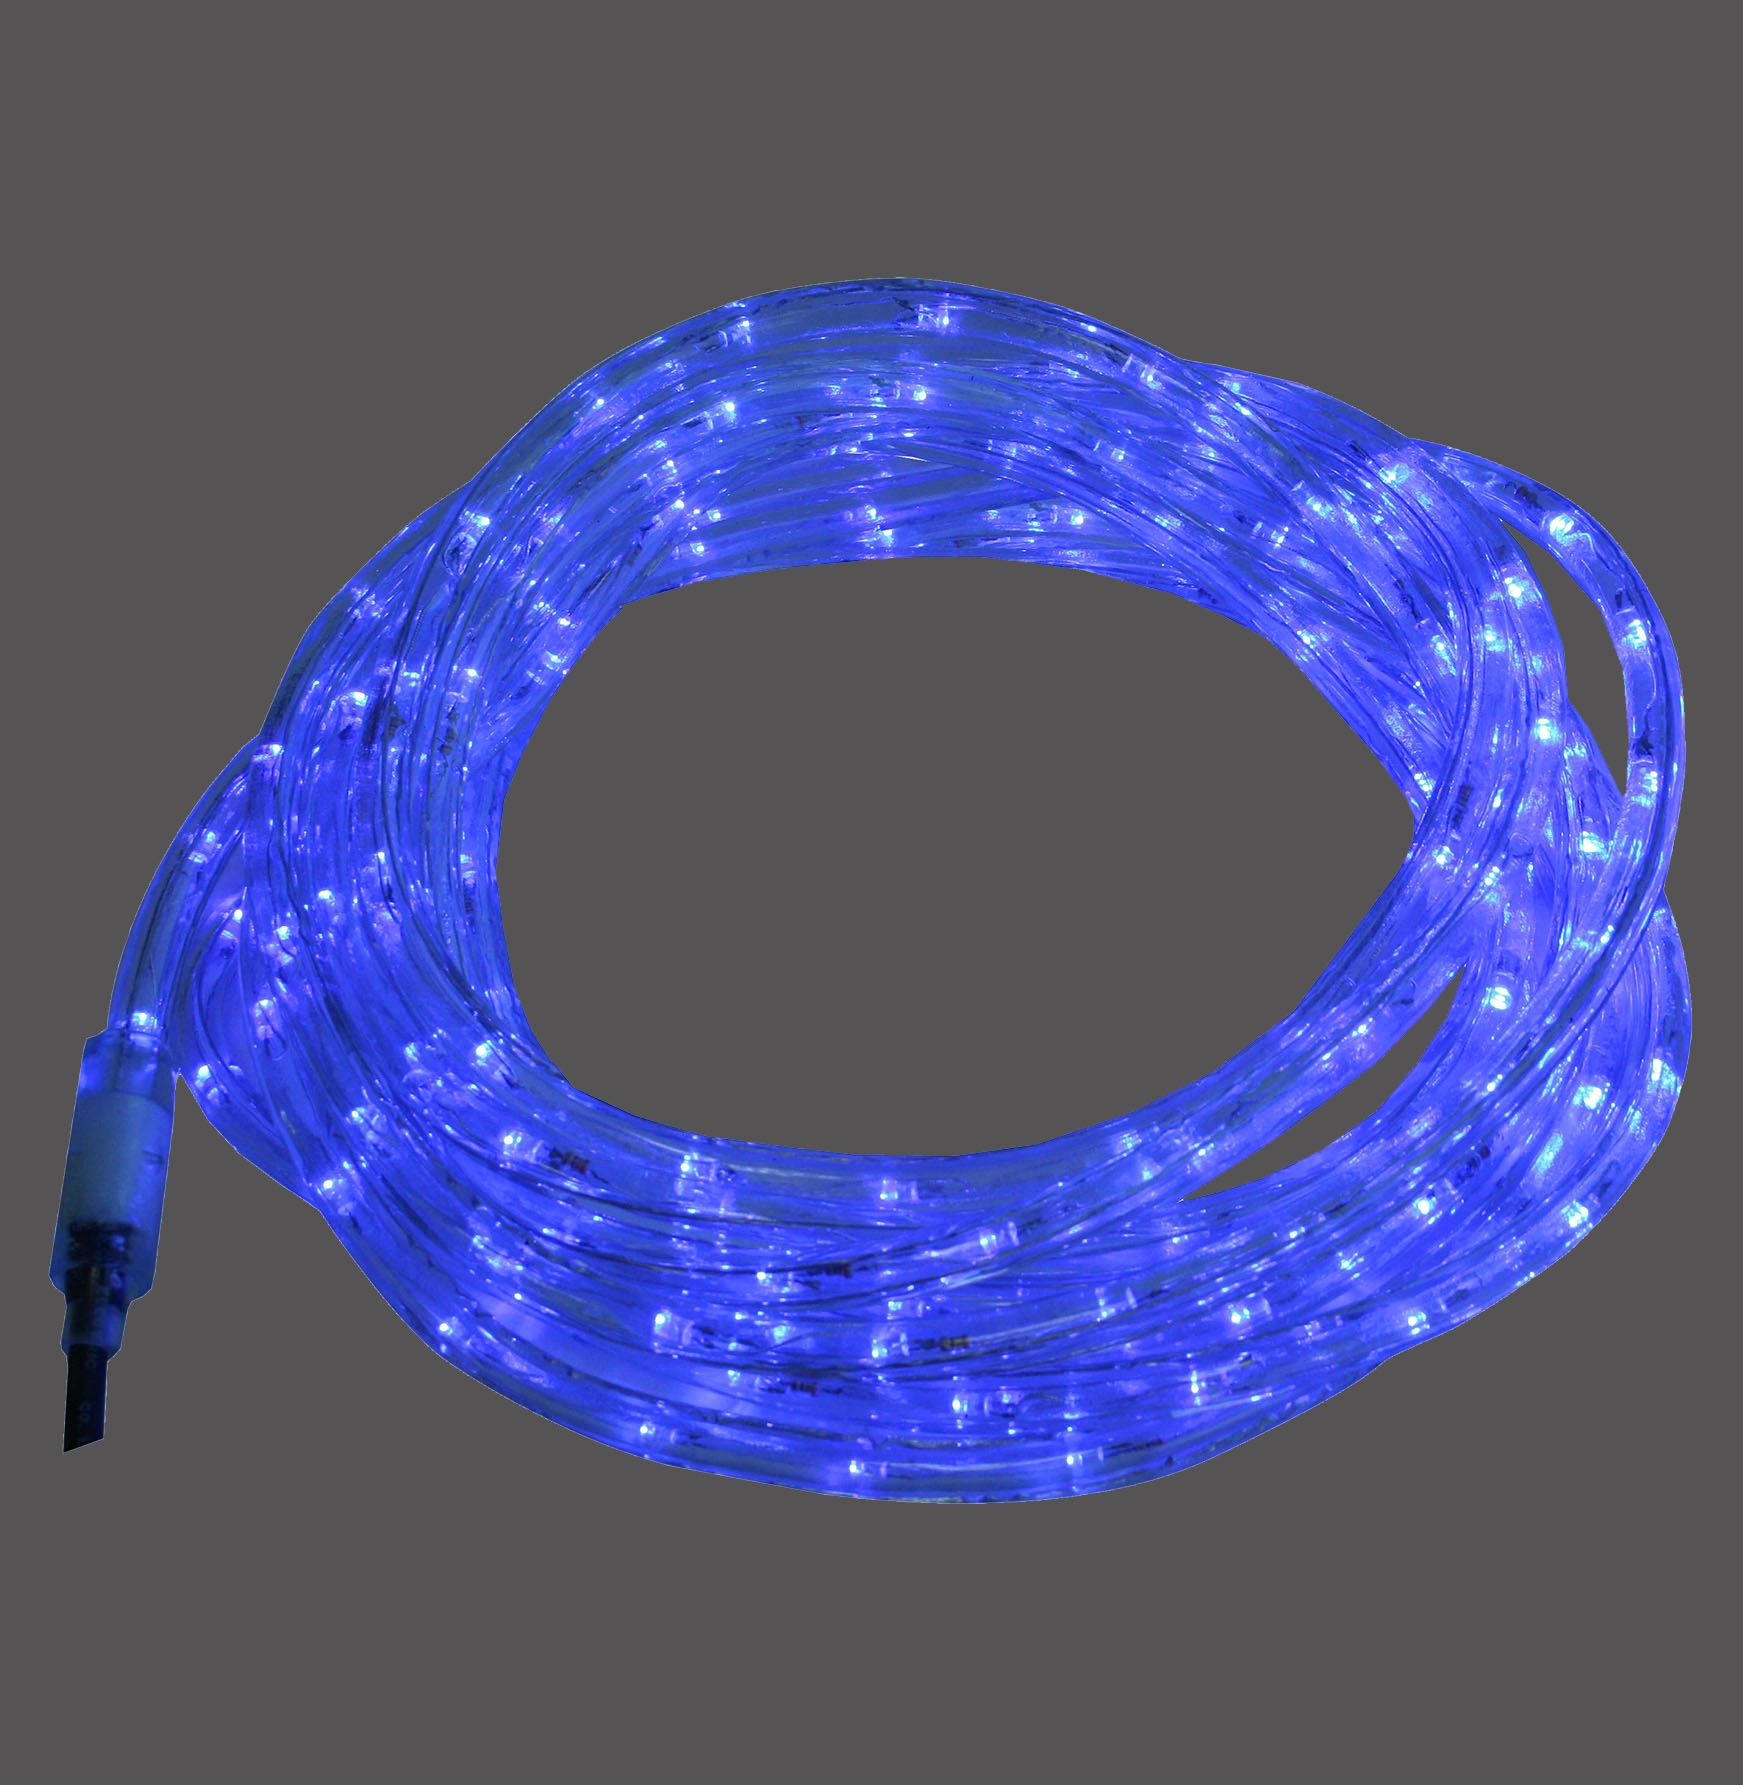 LED-Lichtschlauch 9 m Blau